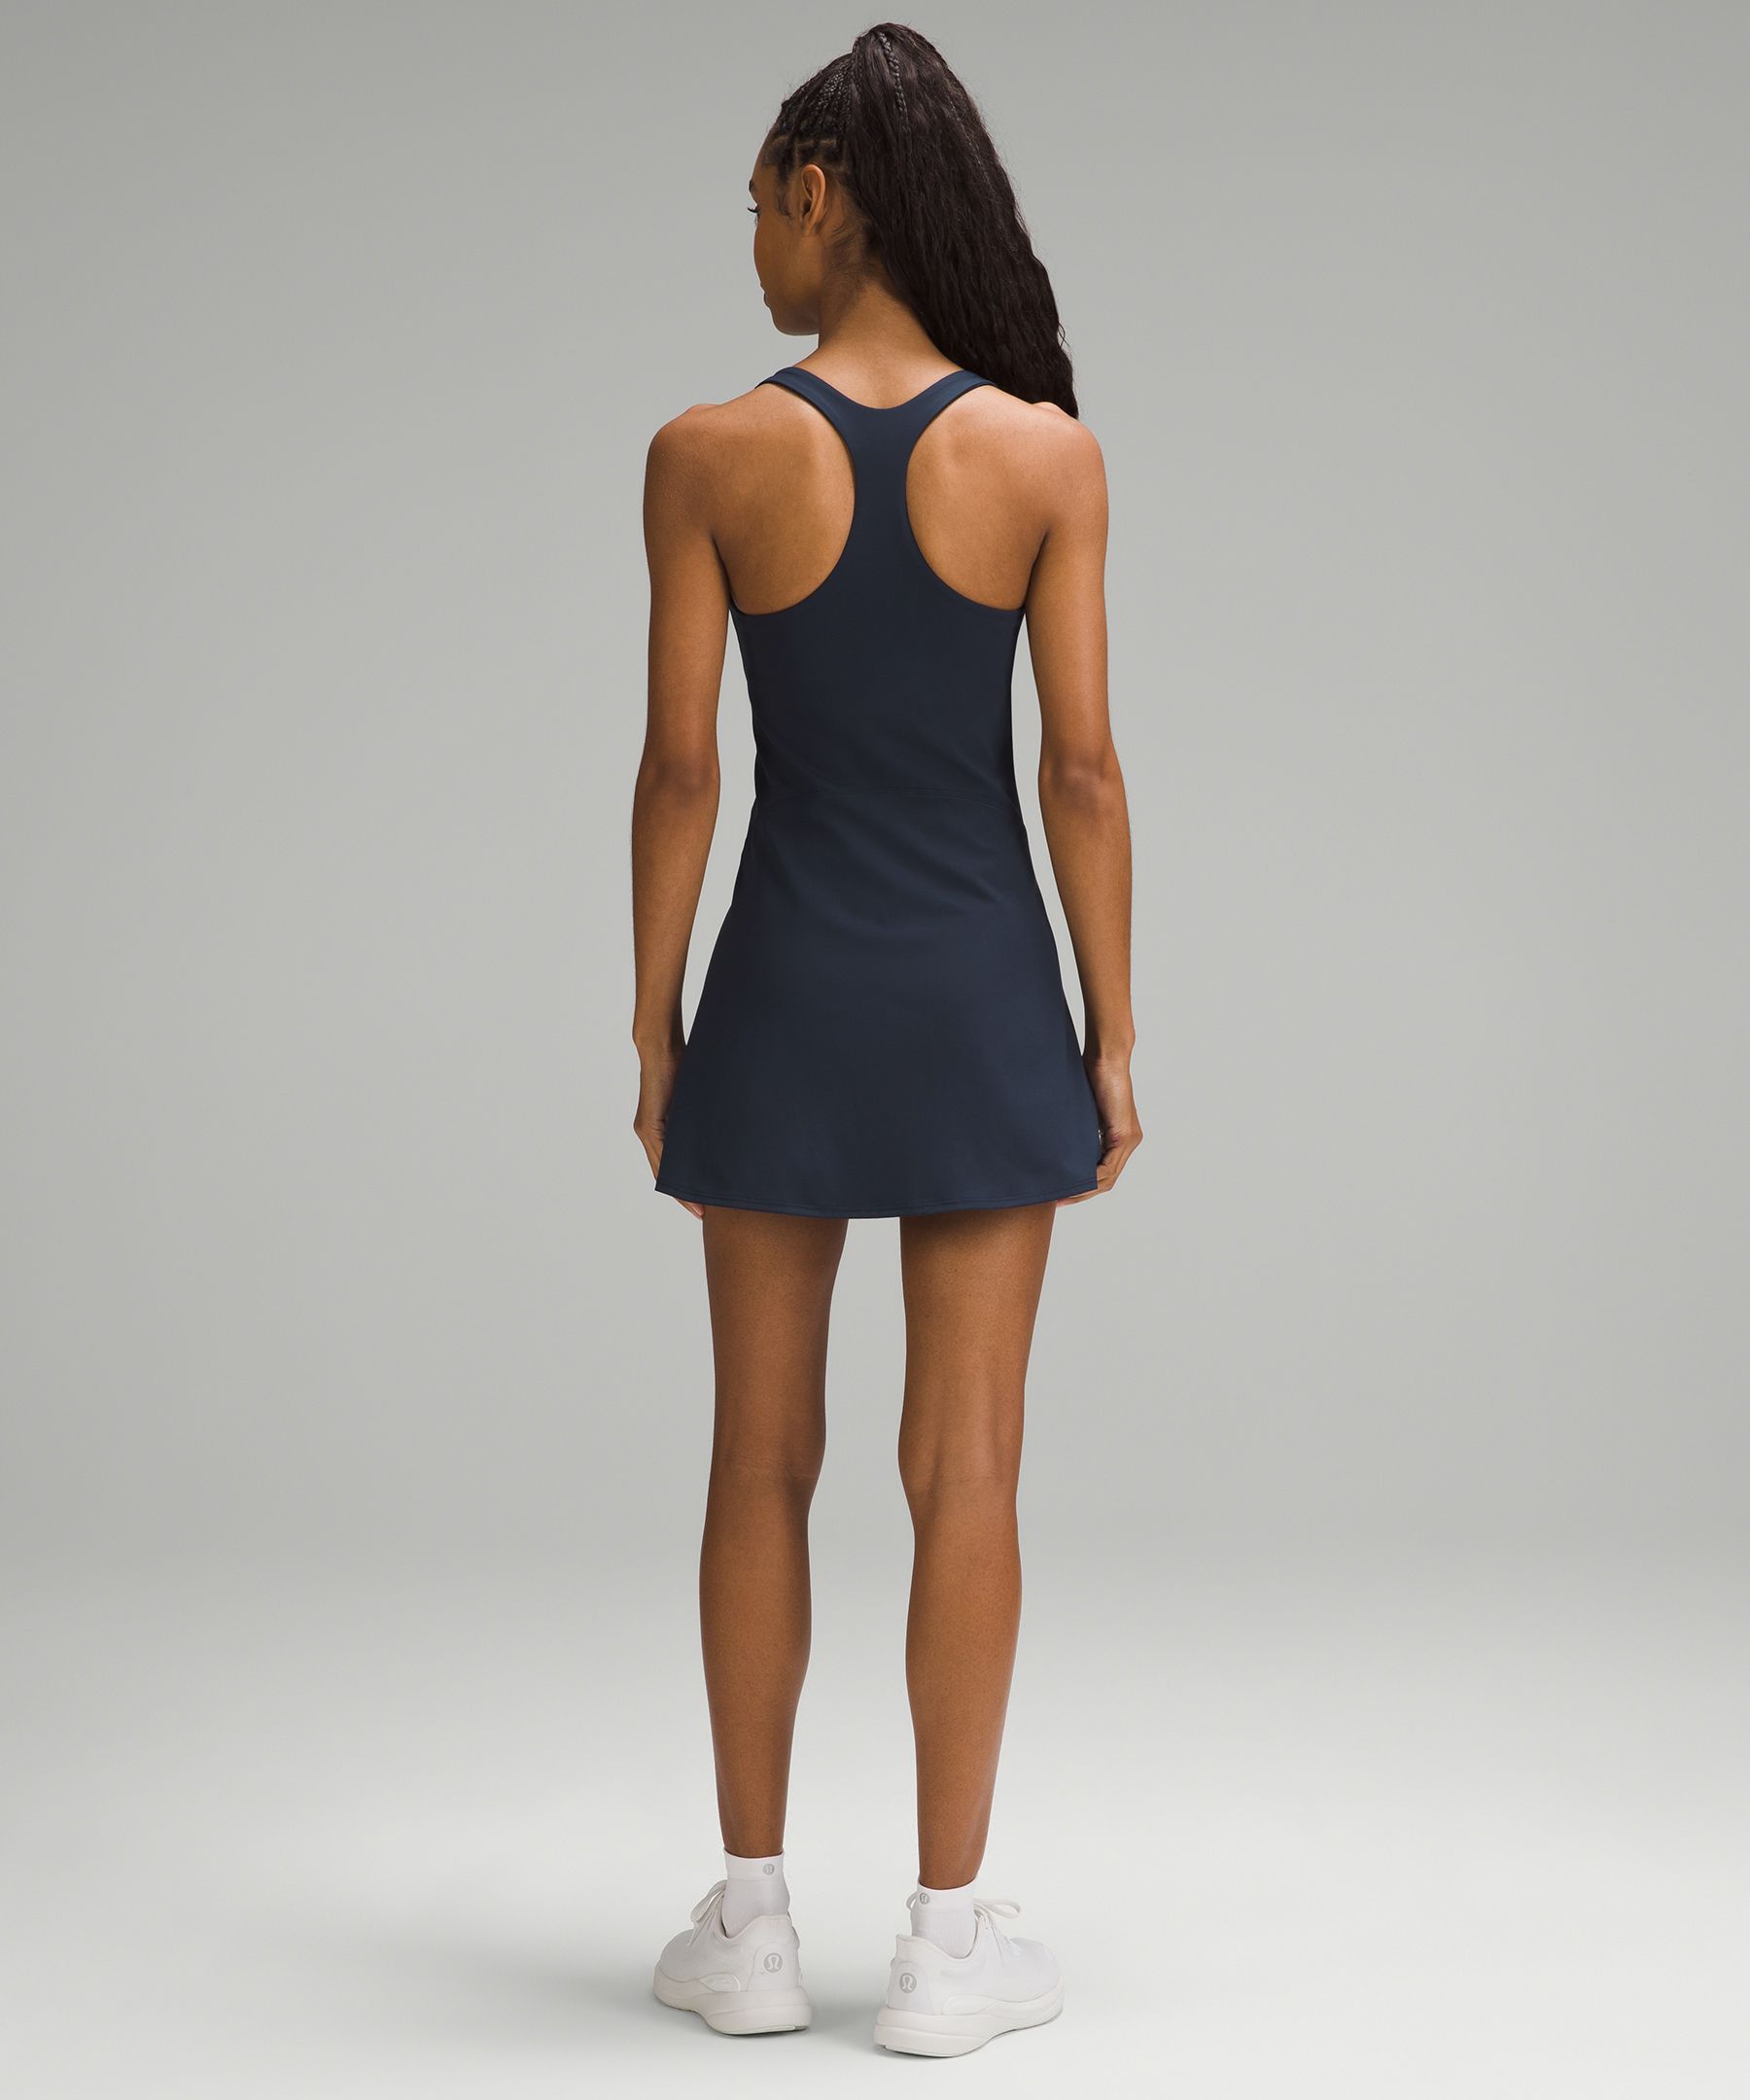 lululemon athletica Zipper Athletic Dresses for Women